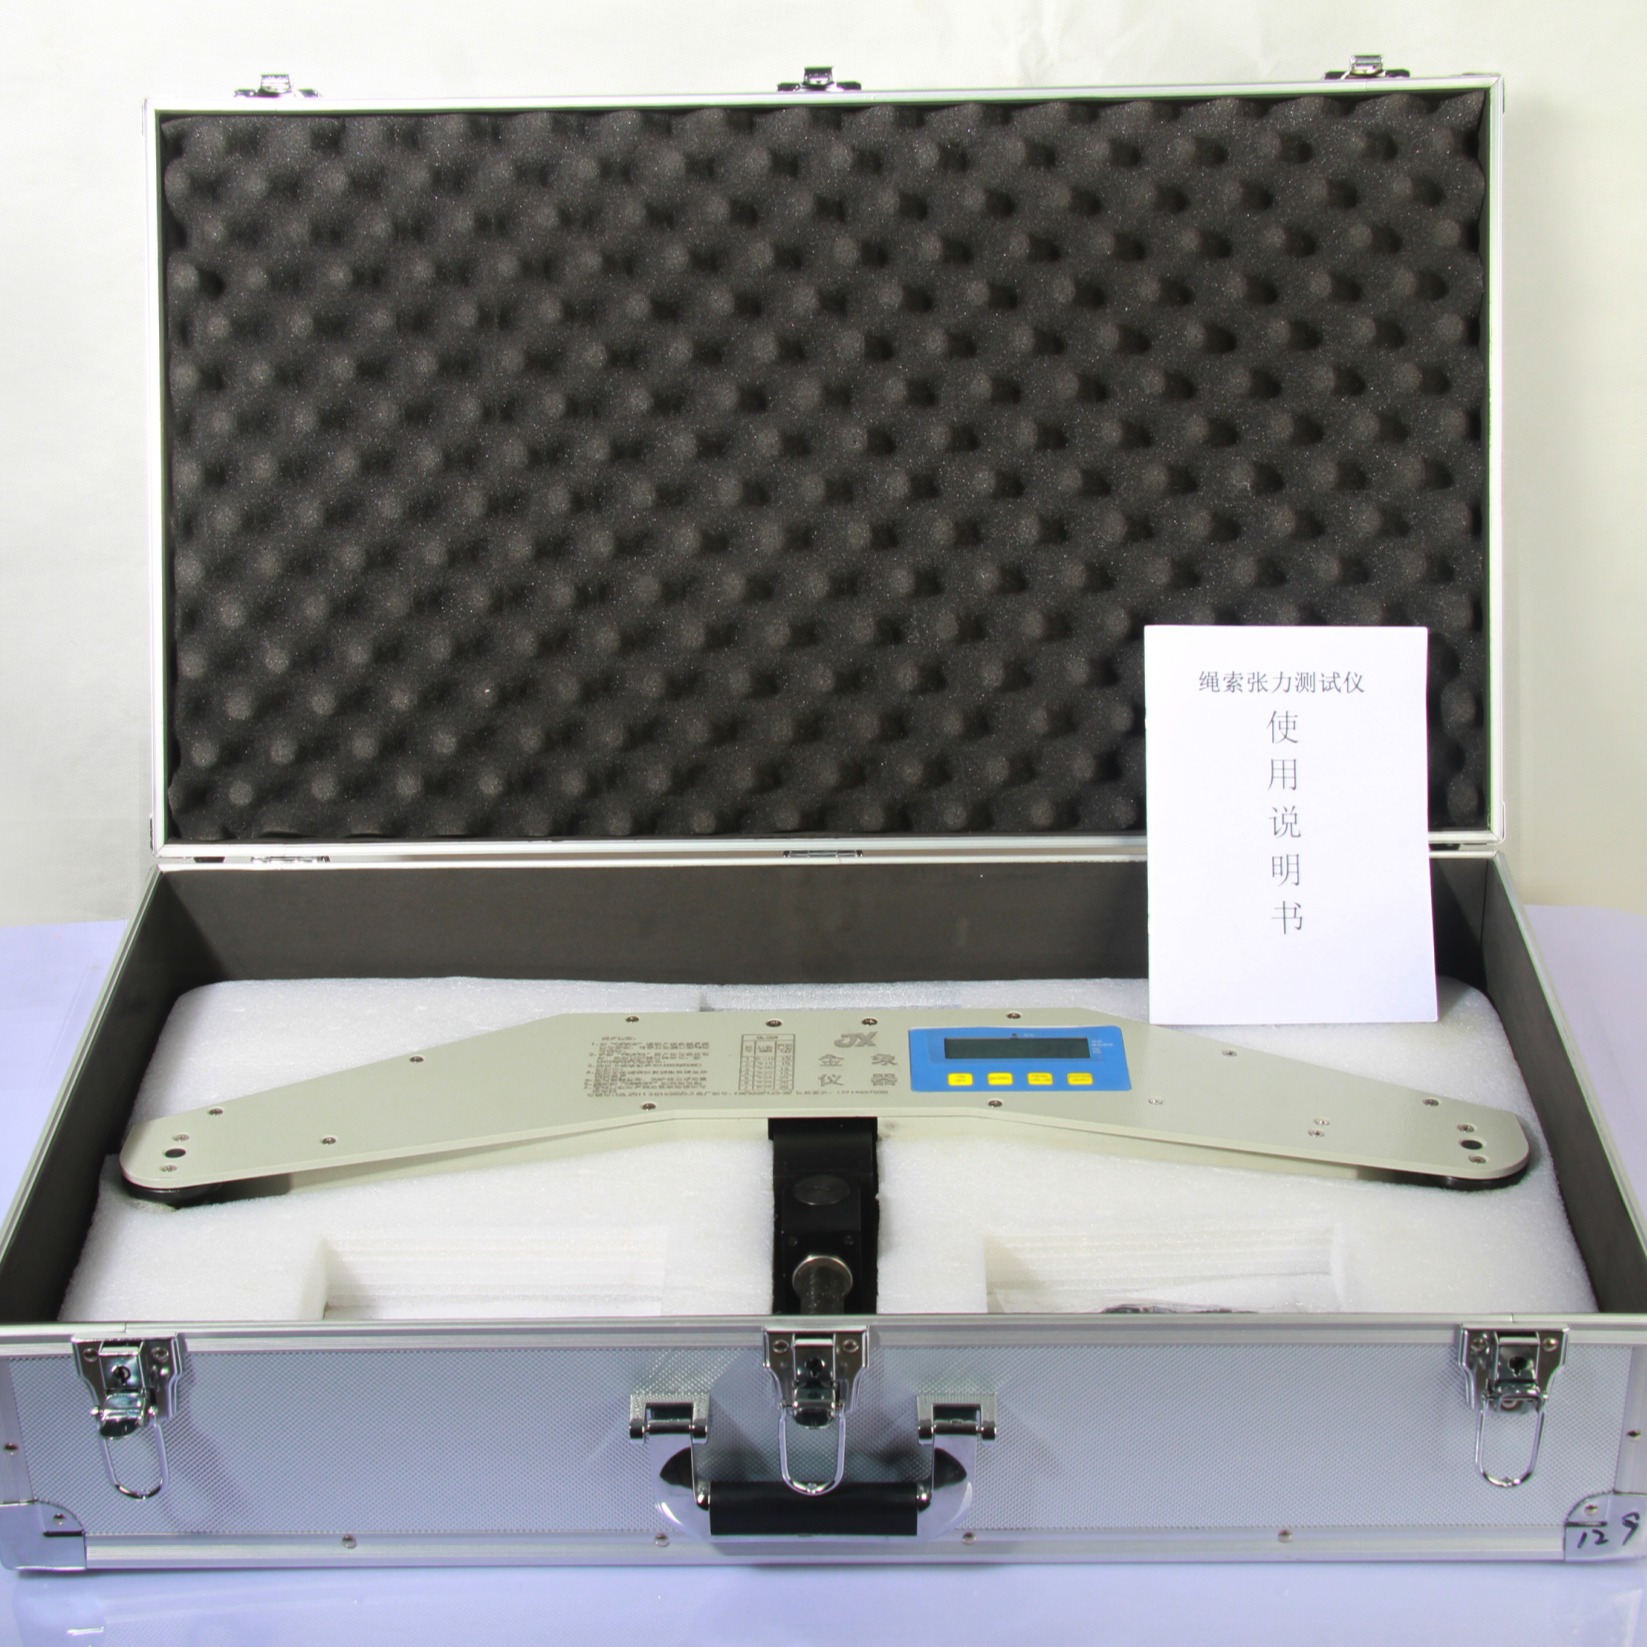 钢索张力测量仪 测量钢索拉力的仪器无需拆卸钢索 金象SL-10T张紧力检测检测仪